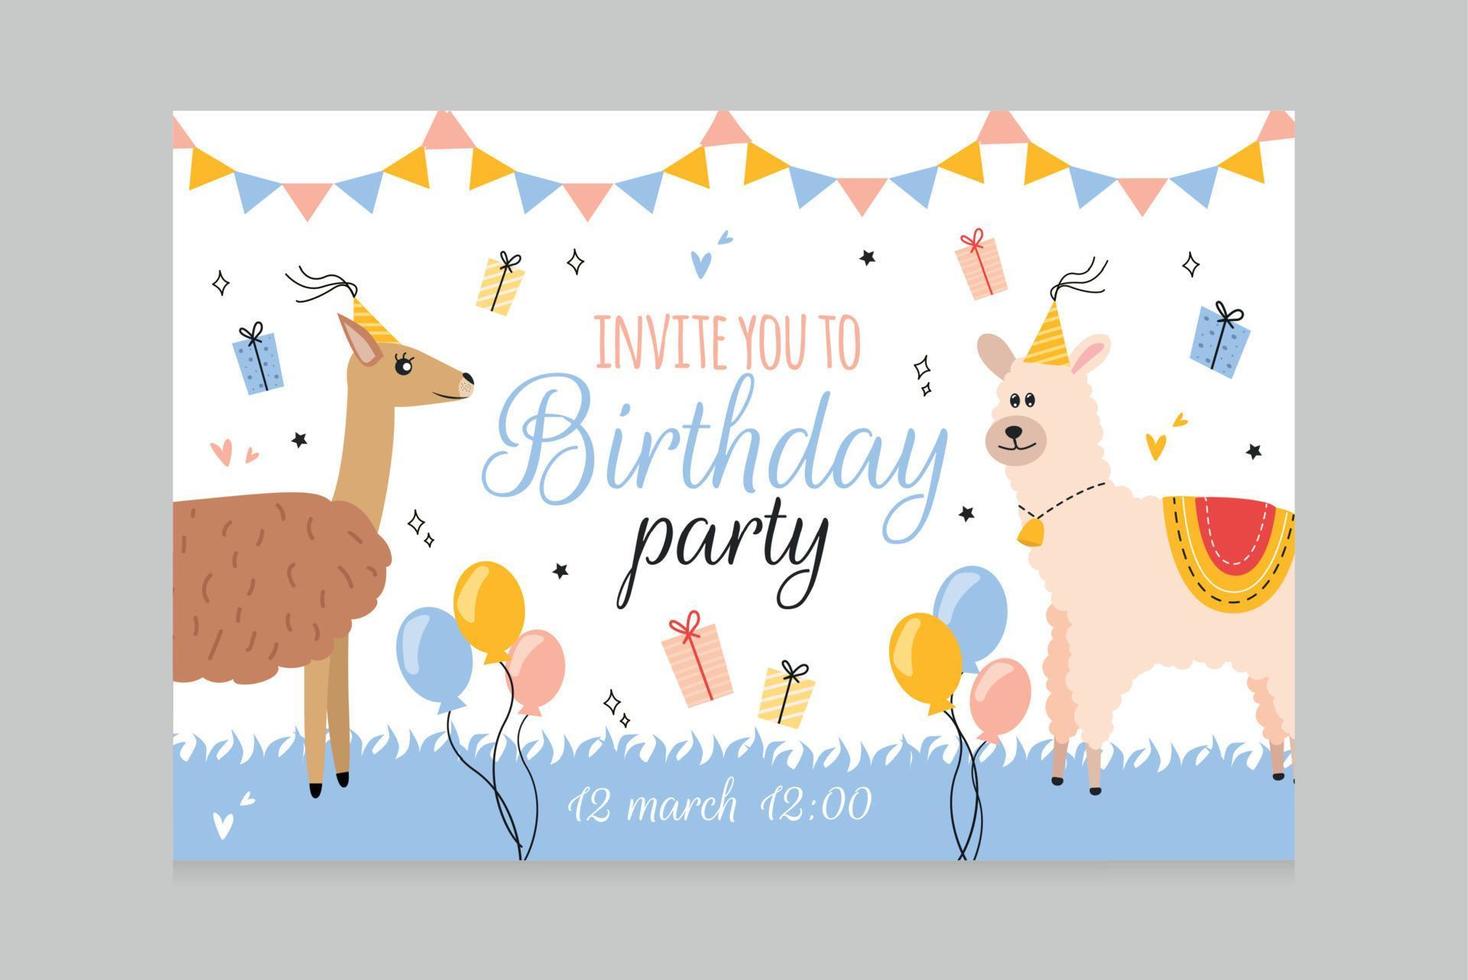 vector ilustración invitación tarjeta con guanaco y alpaca animales en fiesta tapas, regalo cajas, fiesta banderines, globos, invitación usted a cumpleaños fiesta letras, corazones, estrellas, garabatear